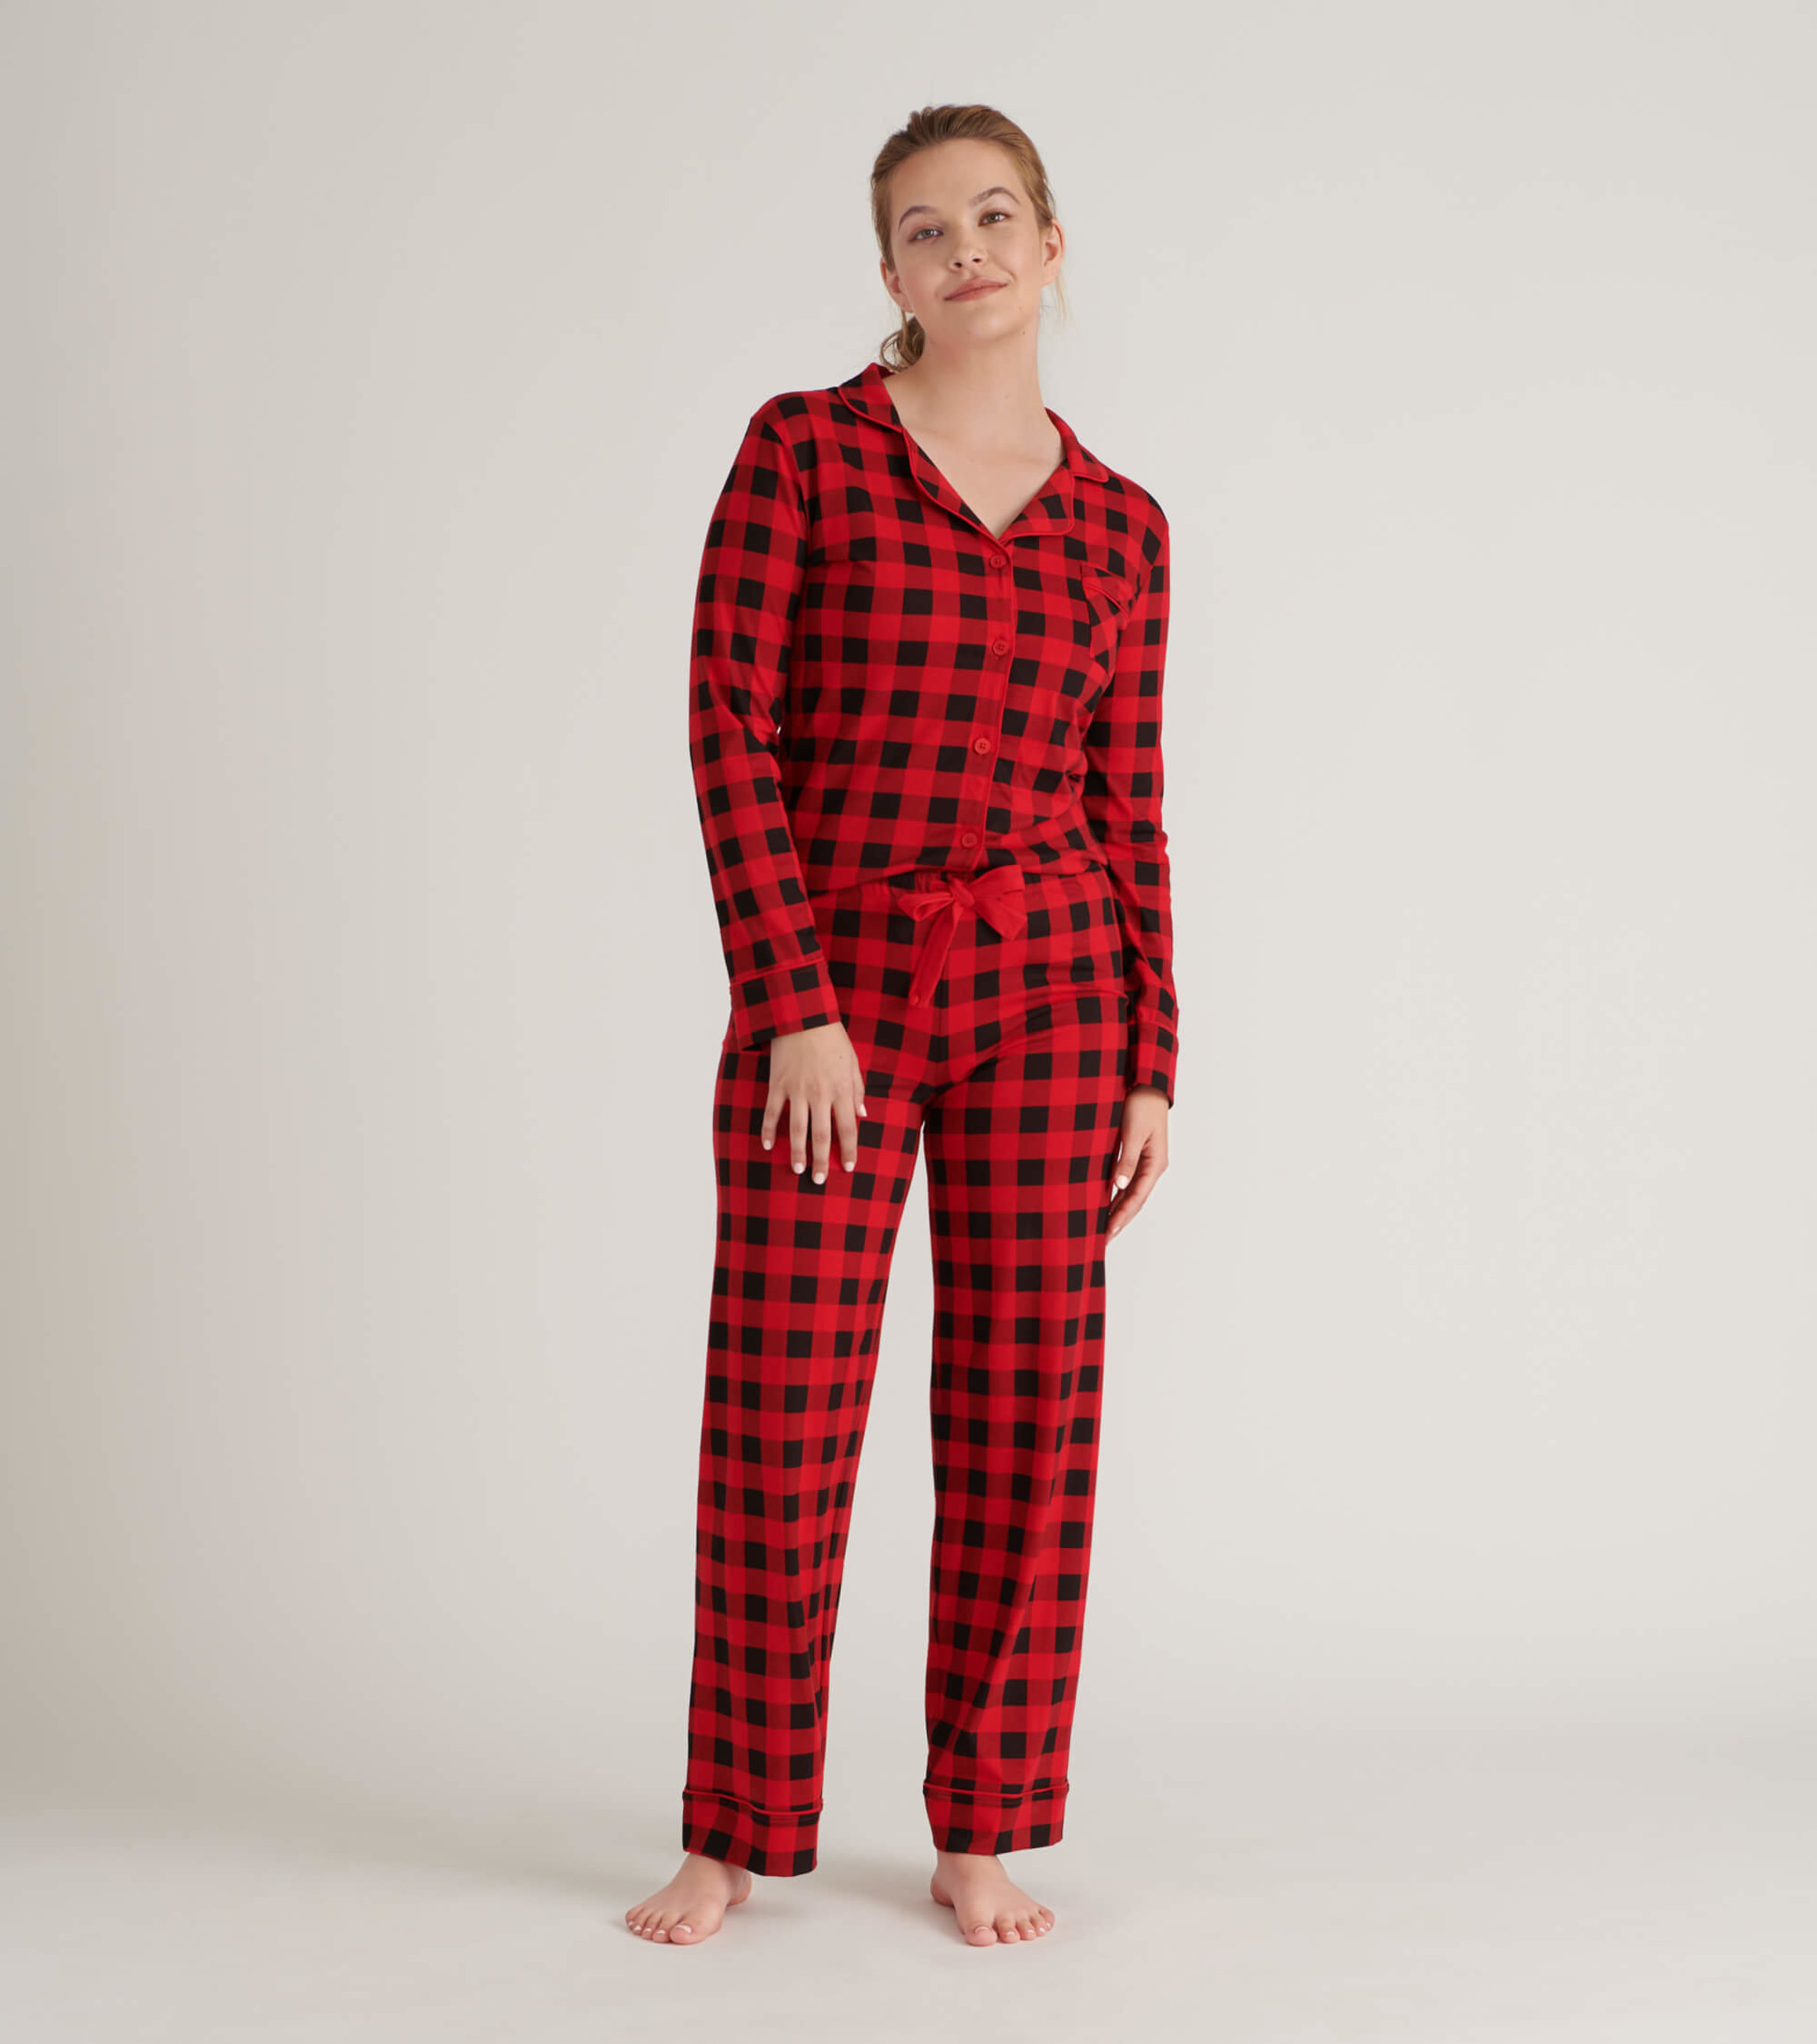 Christmas Buffalo Plaid Pajamas, Womens Christmas Pajamas